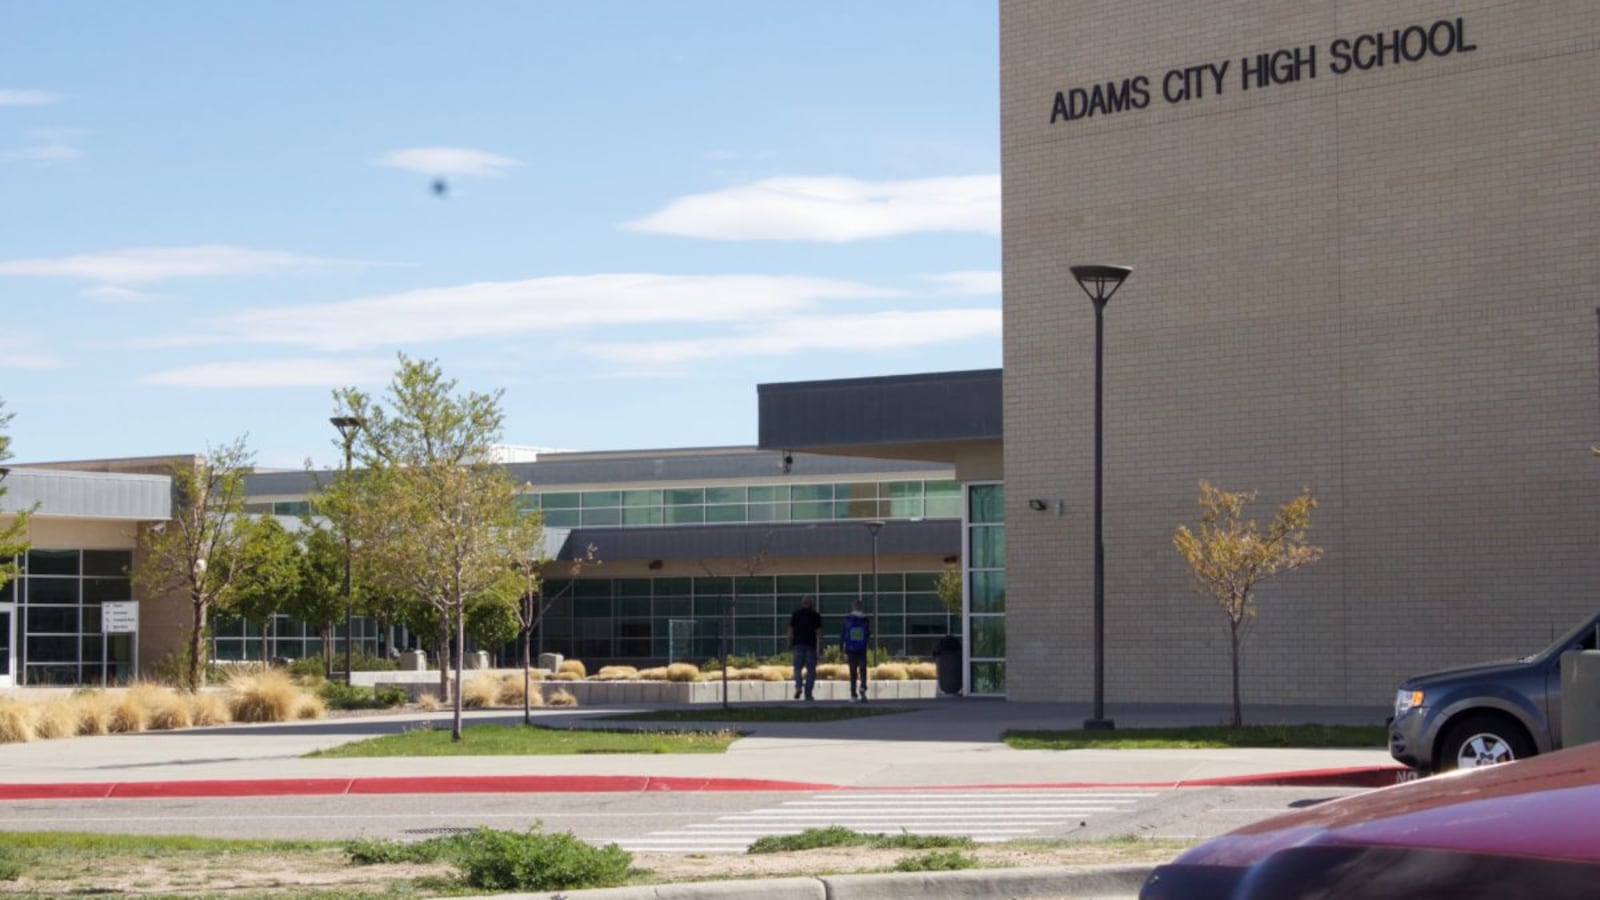 Adams City High School in Commerce City, Colorado.